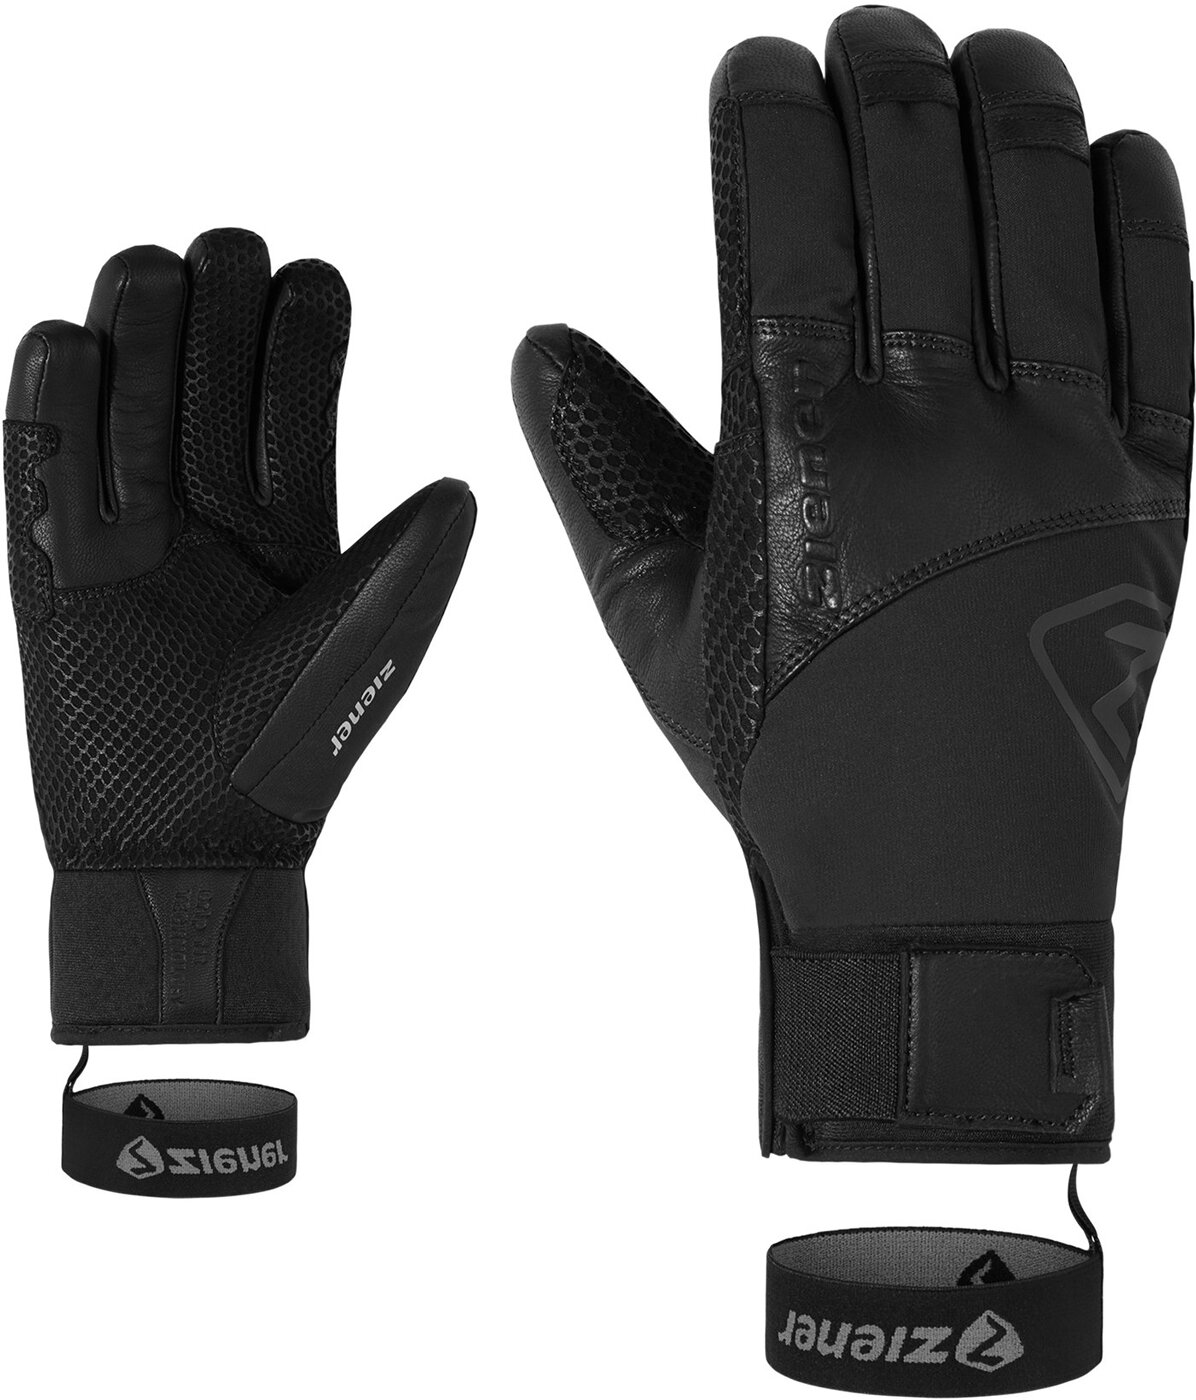 ZIENER GOTAR AS(R) AW glove ski alpine 12 online kaufen